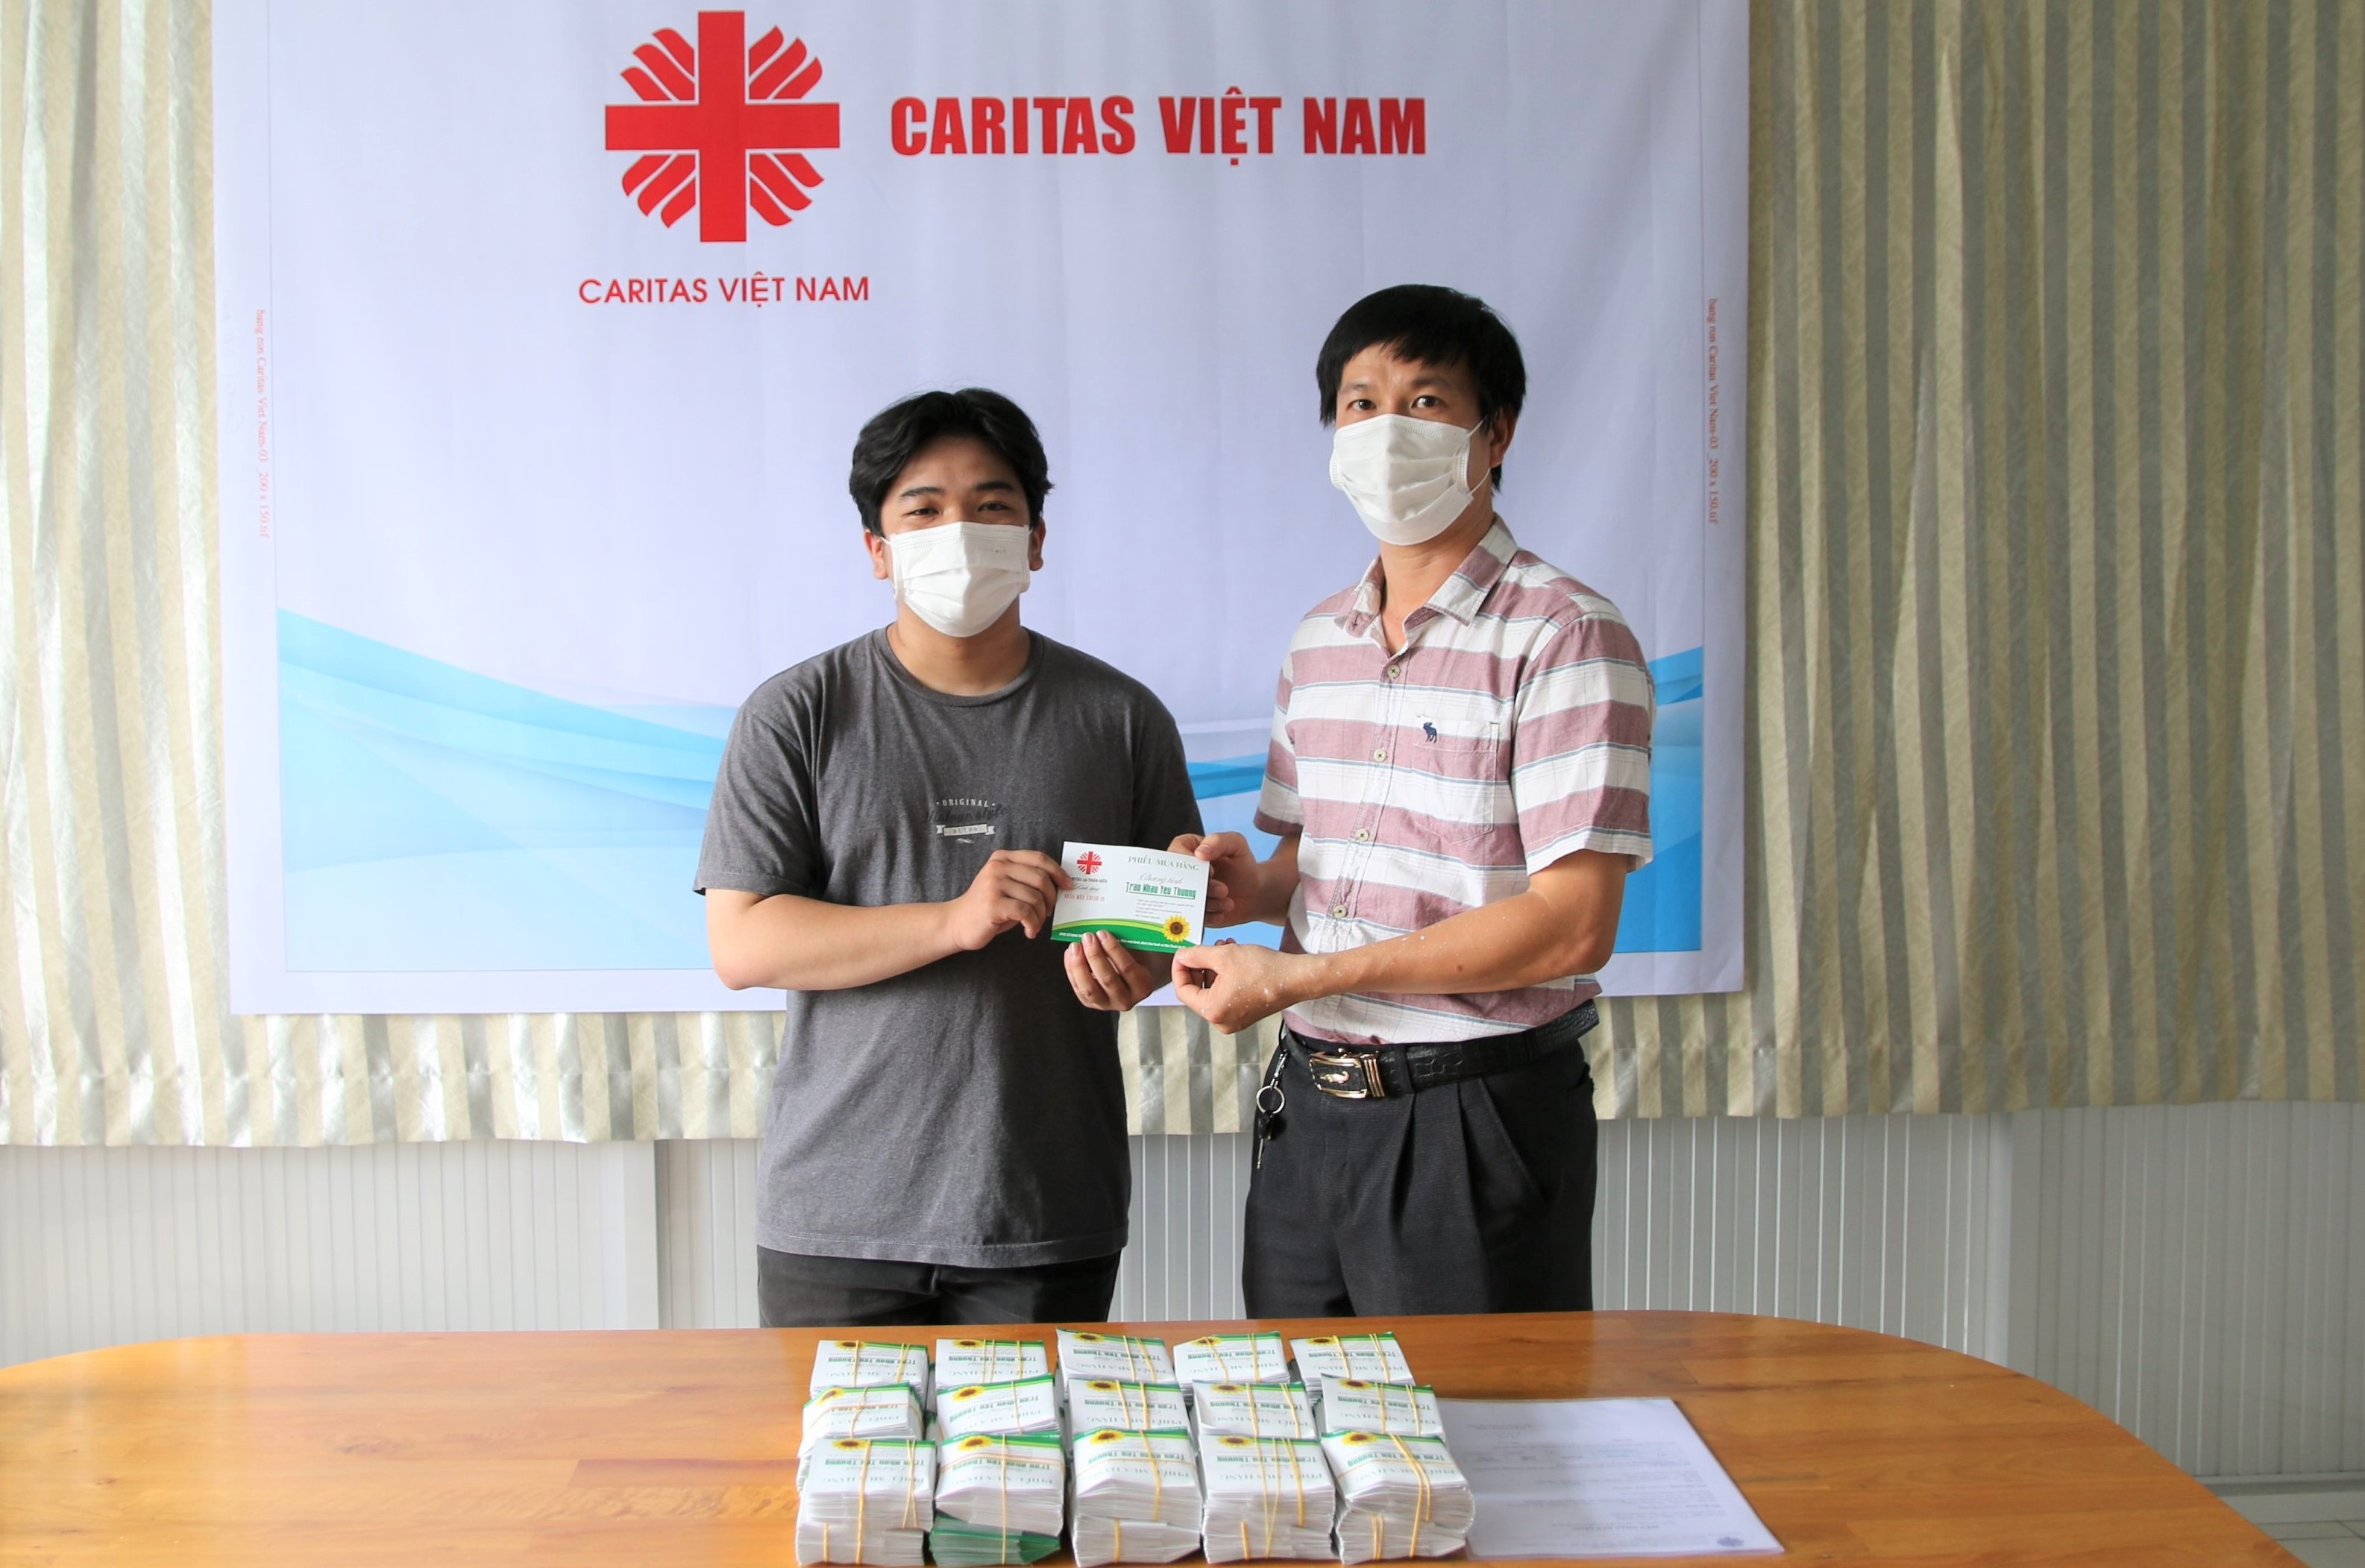 Caritas Việt Nam: Thông báo chương trình Trao Nhau Yêu Thương hỗ trợ người nghèo tại TP. HCM trong mùa COVID-19